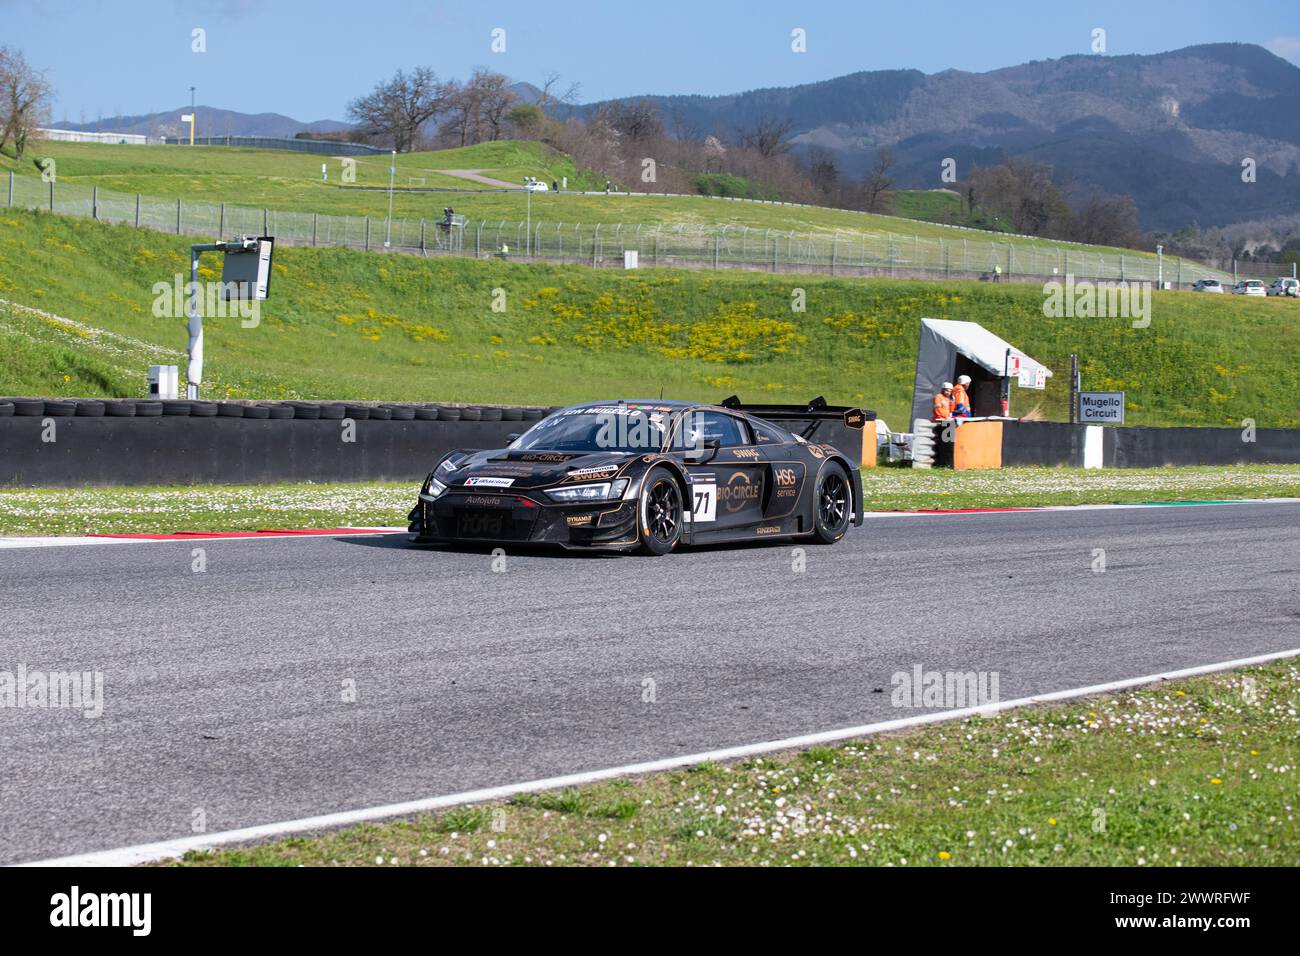 Circuito del Mugello, Italia 24/03/2024 - 12h Mugello, serie 24H. Gara parte 2. Audi R8 LMS GT3 EVO II di Juta Racing in azione su pista. Foto: Fabio Pagani/Alamy Live News Foto Stock